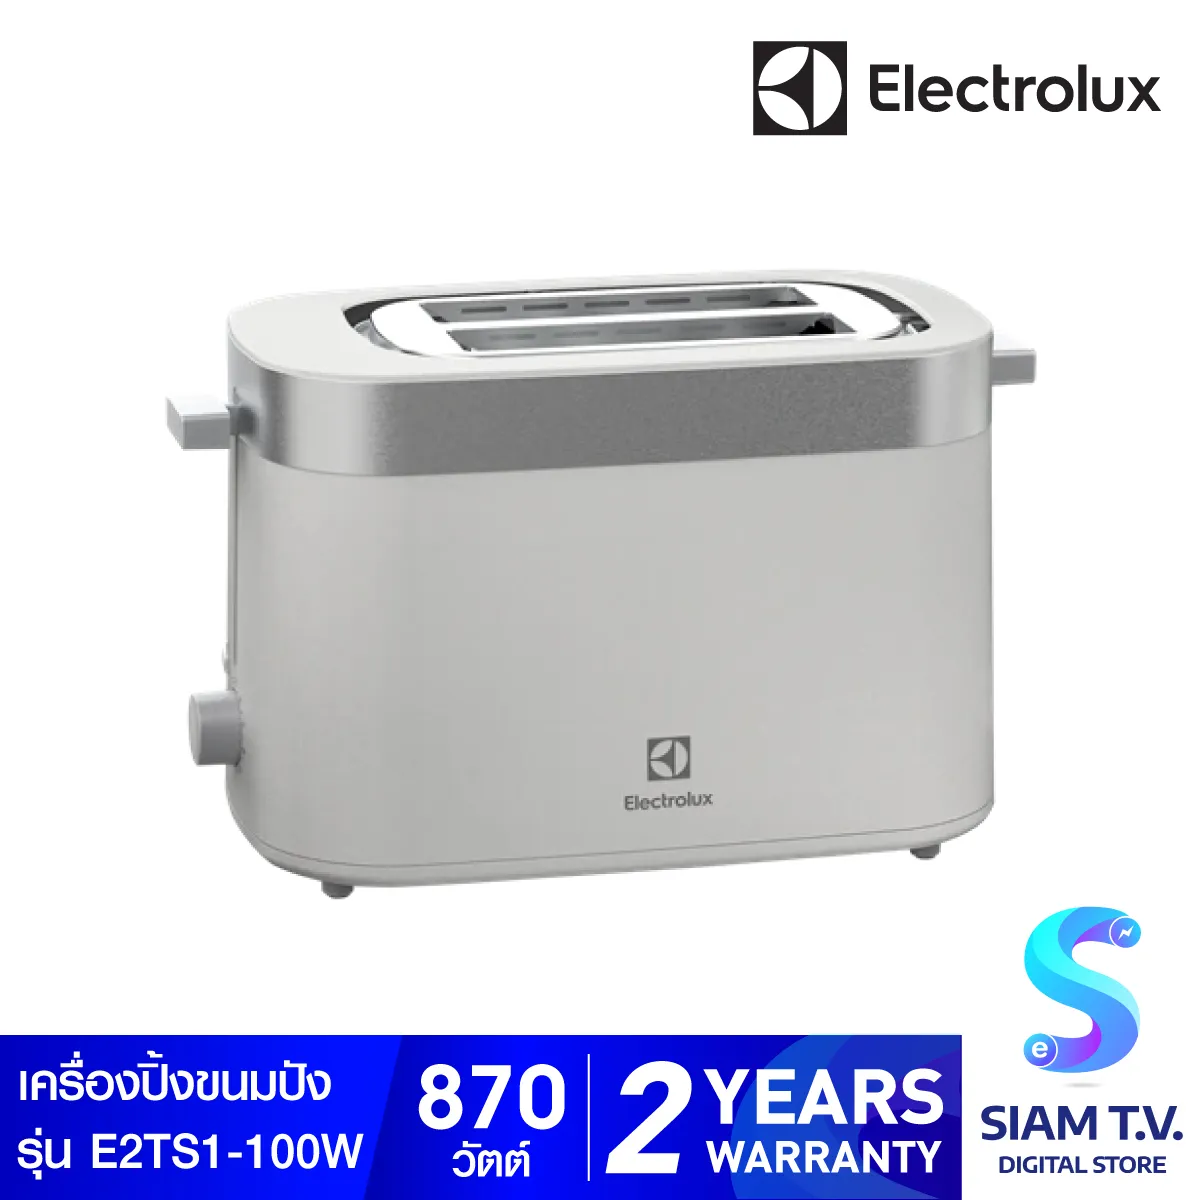 ELECTROLUX เครื่องปิ้งขนมปัง E2TS1 100W ควบคุมความร้อน 7ระดับ โดย สยามทีวี by Siam T.V.